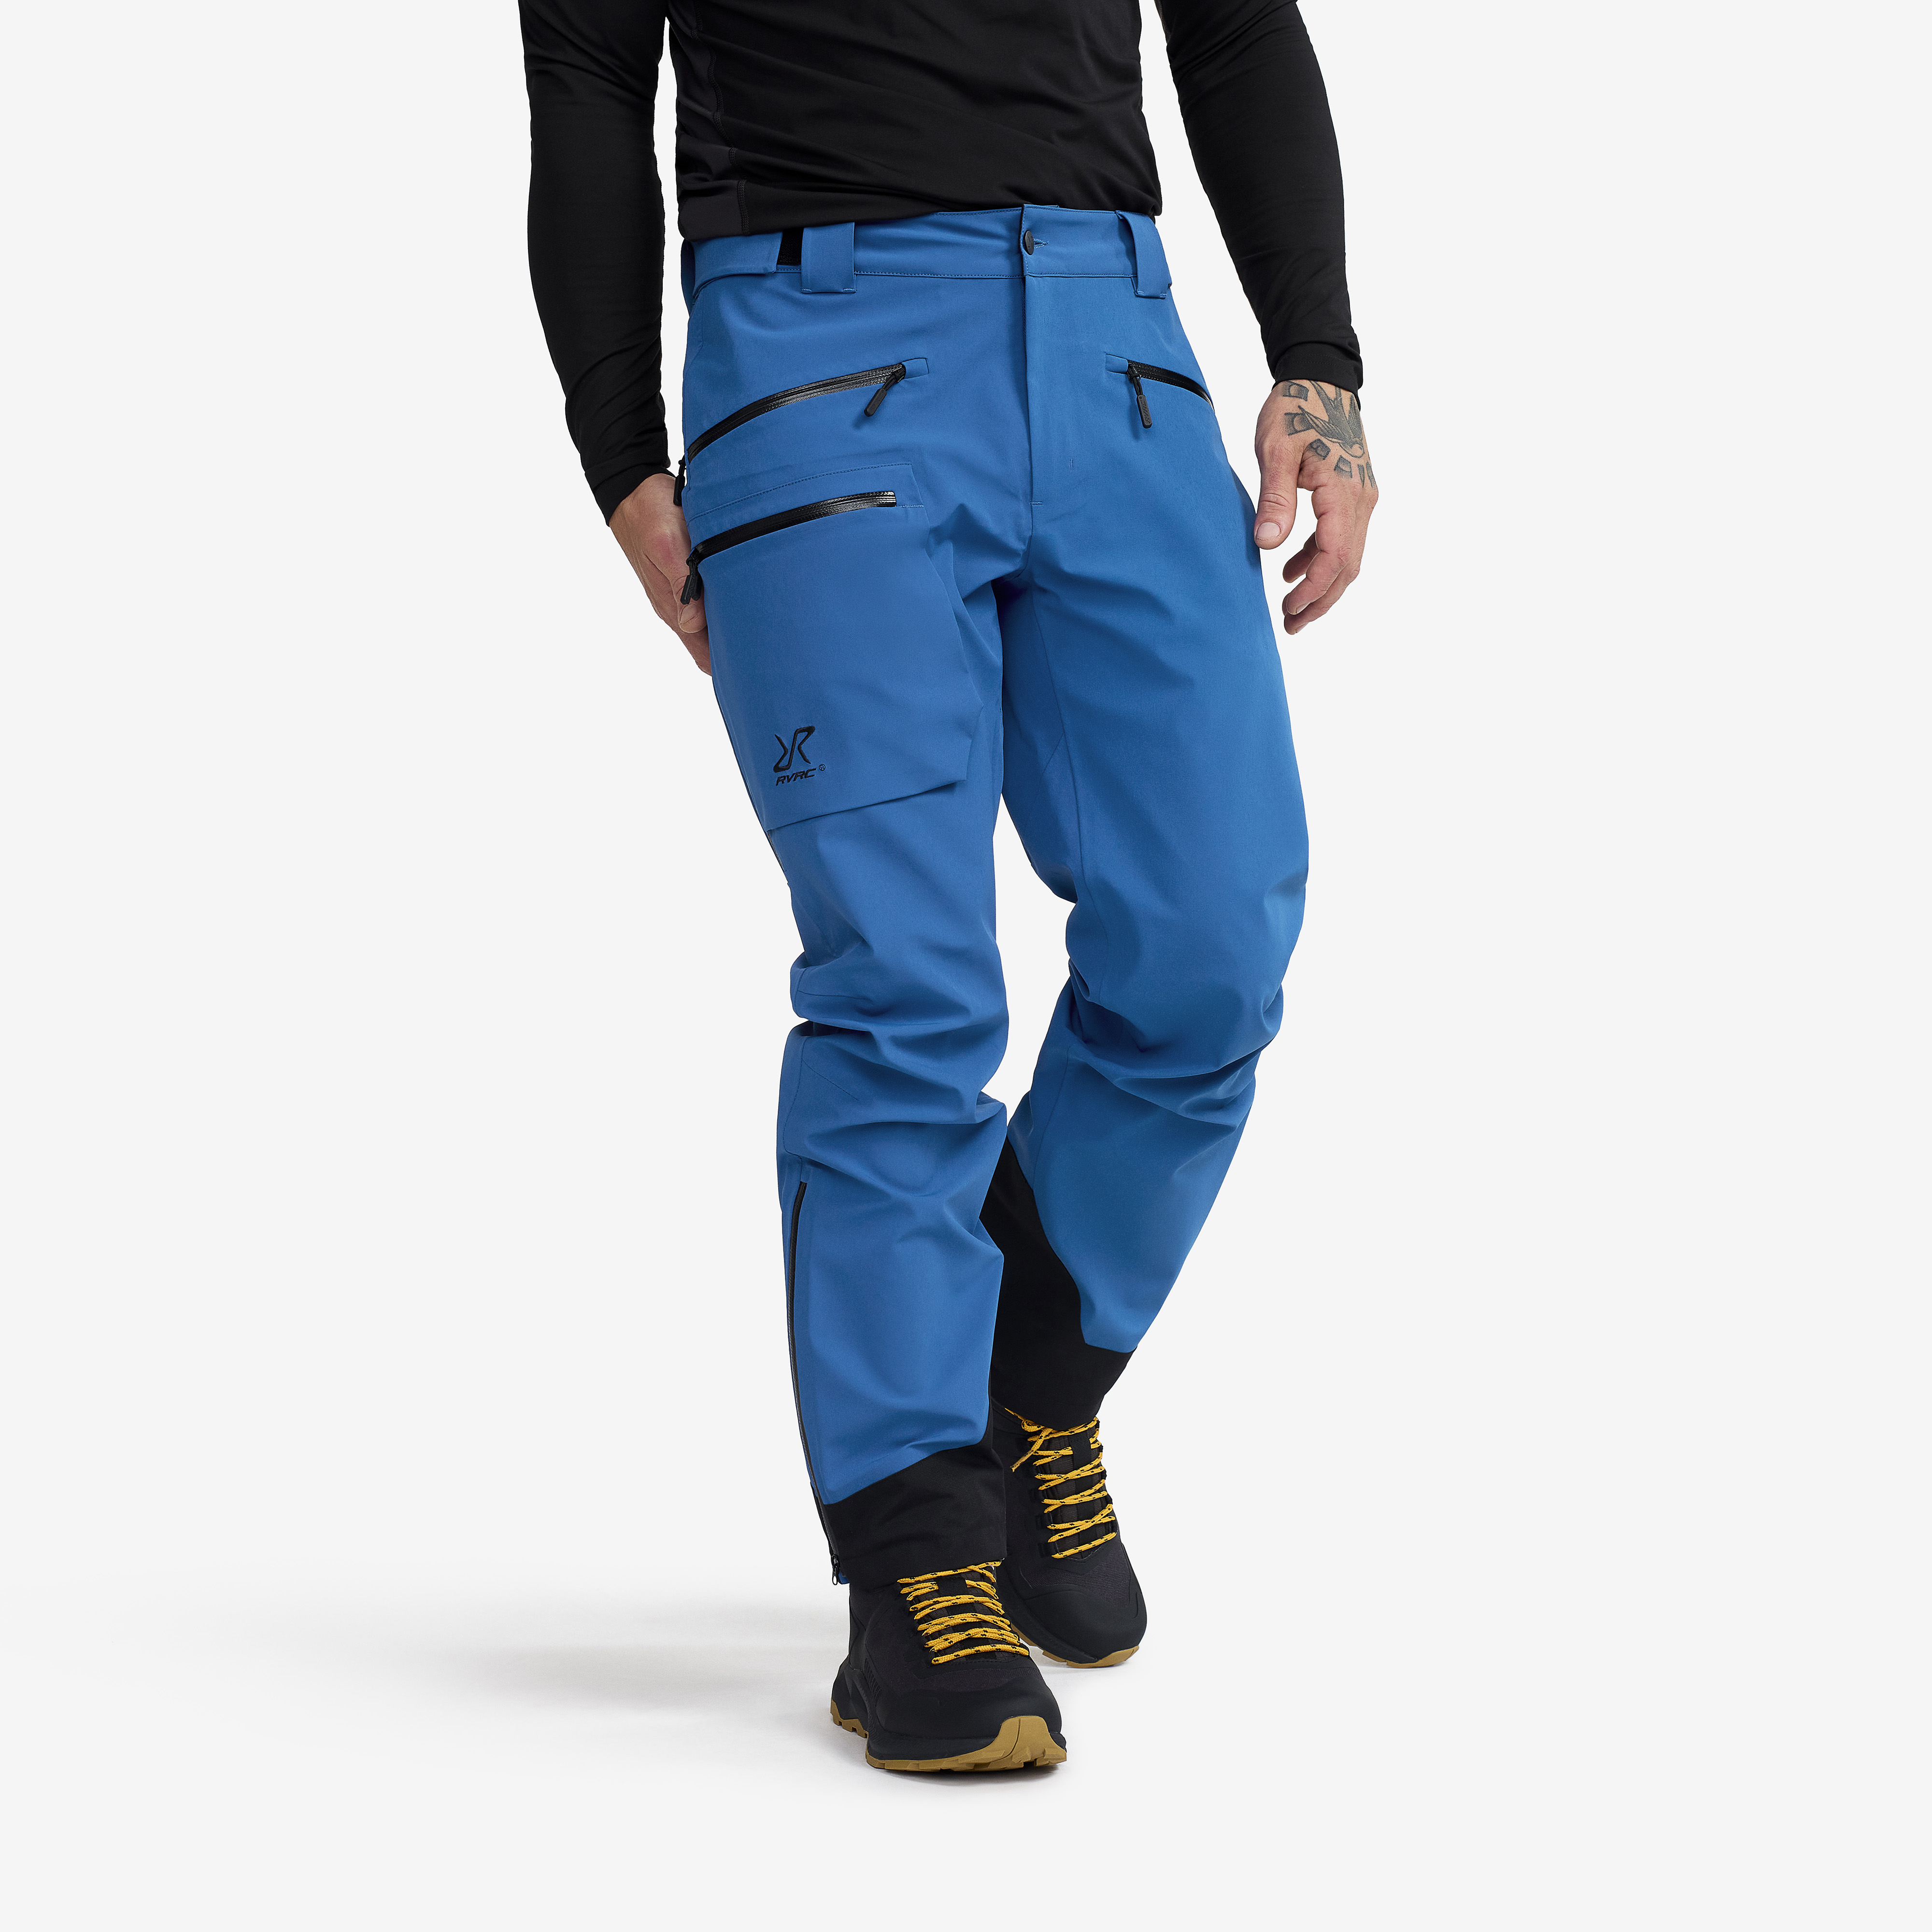 Aphex Pro Pants Classic Blue Men